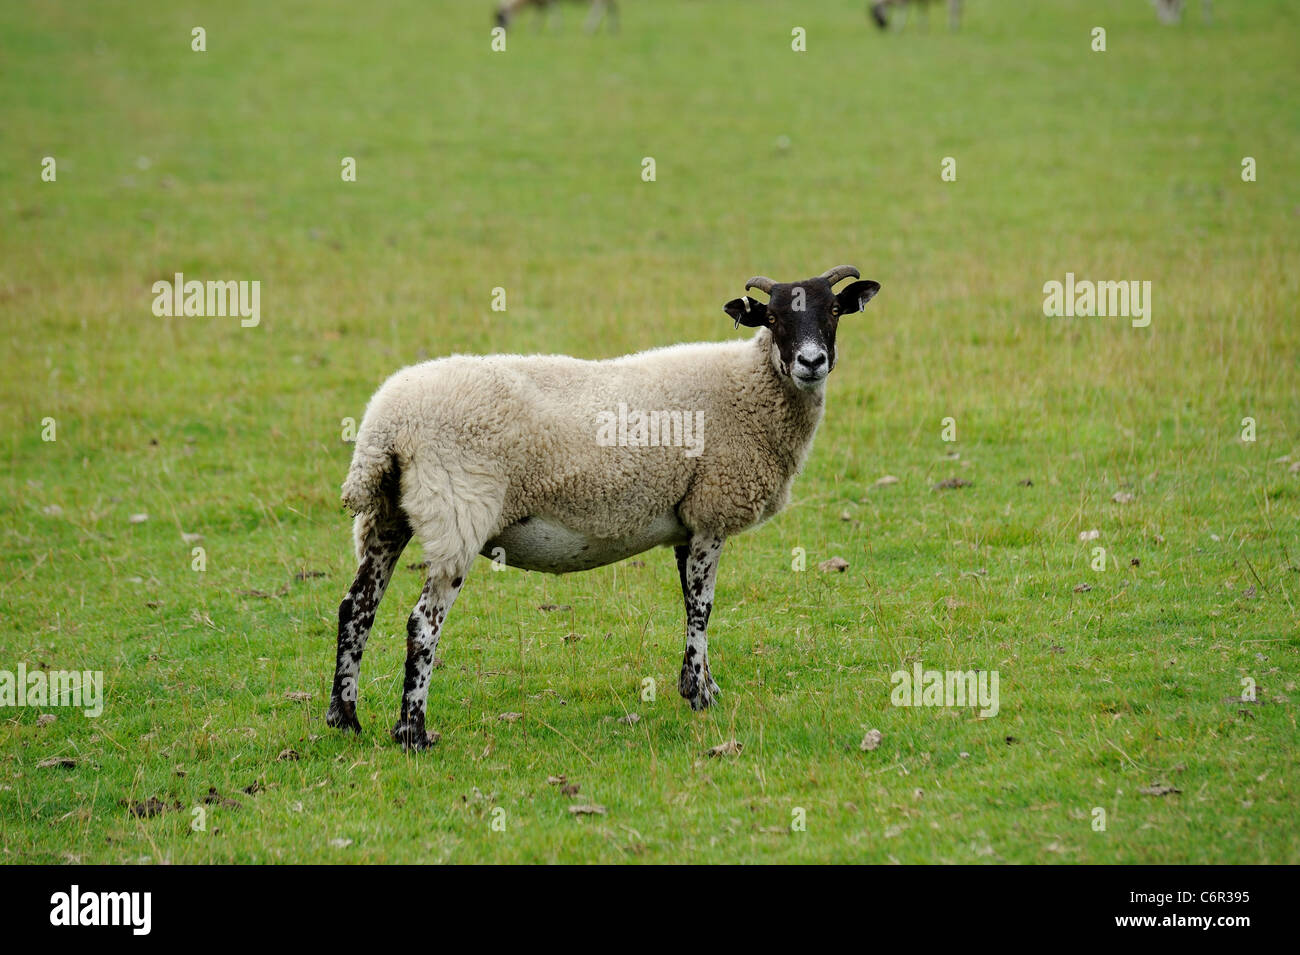 sheep on farmland chatsworth park estate derbyshire england uk Stock Photo